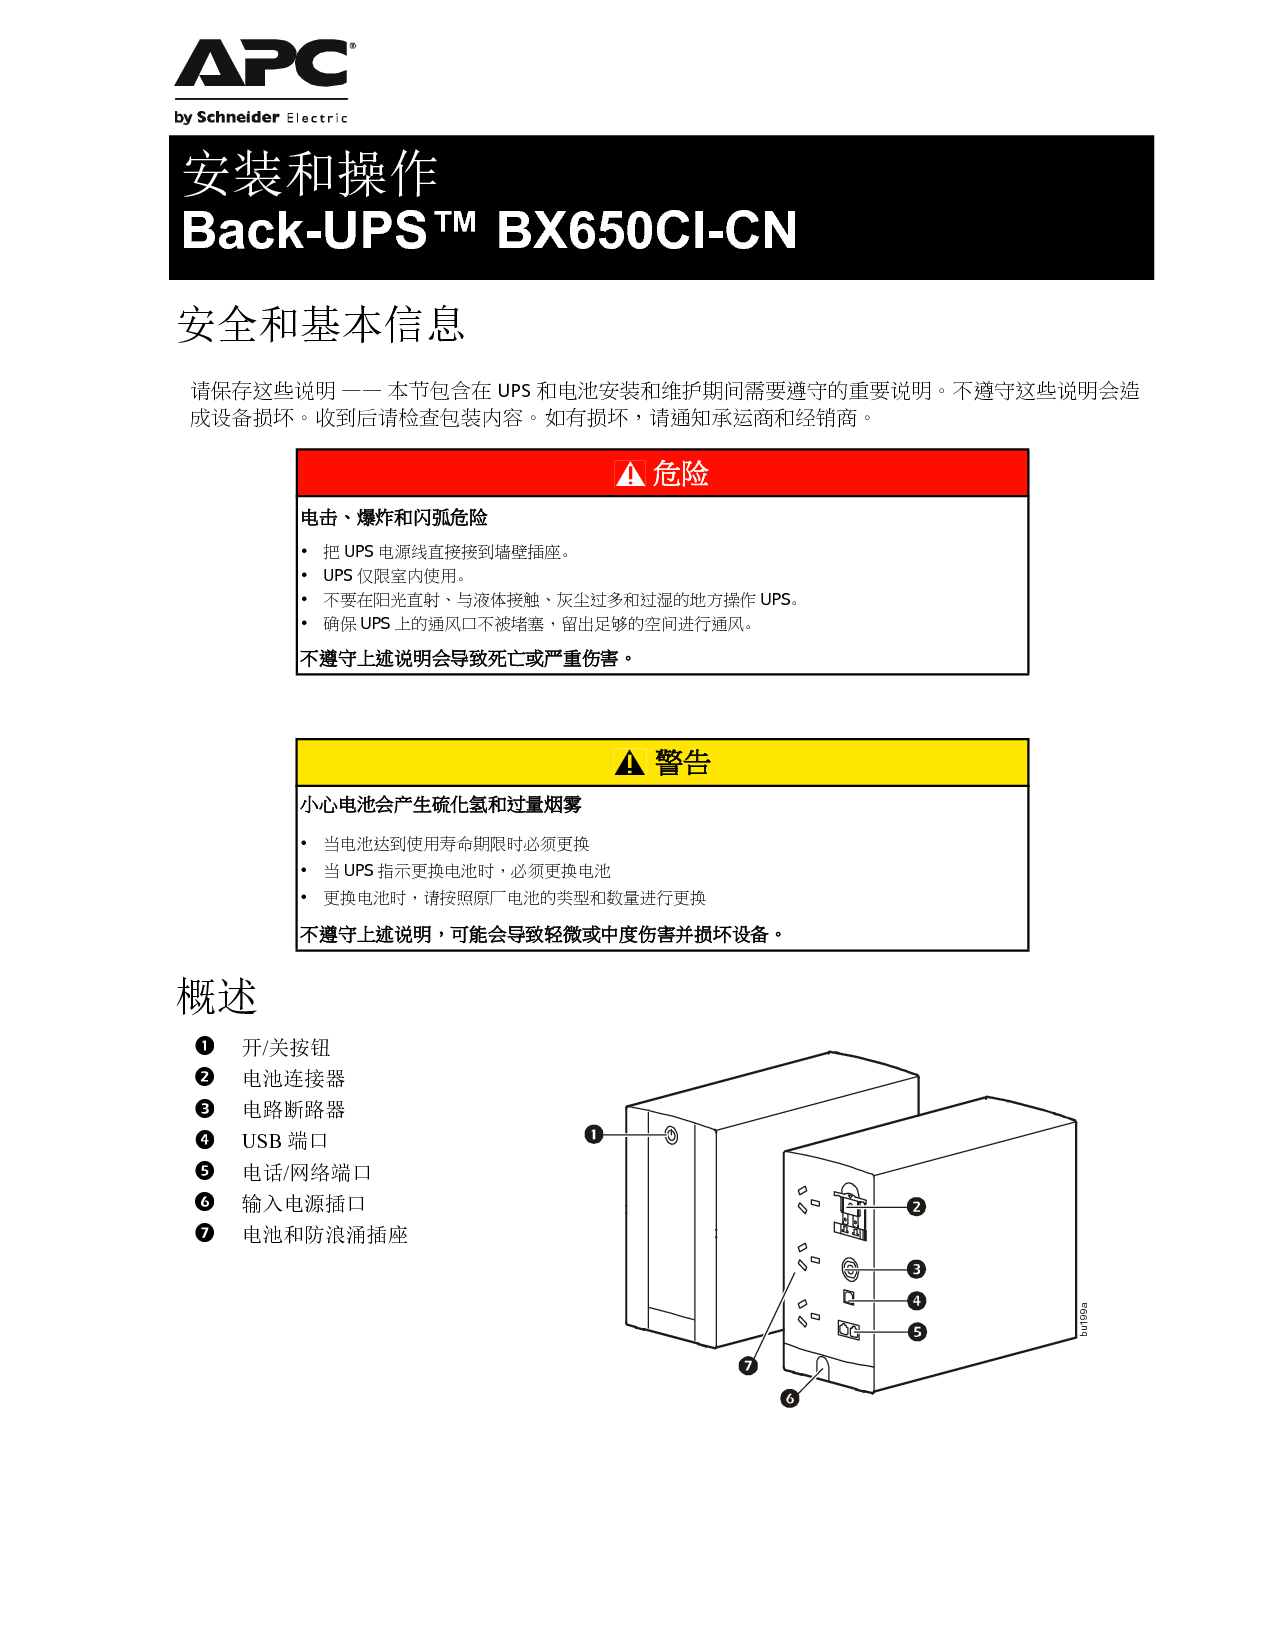 APC Back-UPS BX650CI-CH 安装使用手册 封面